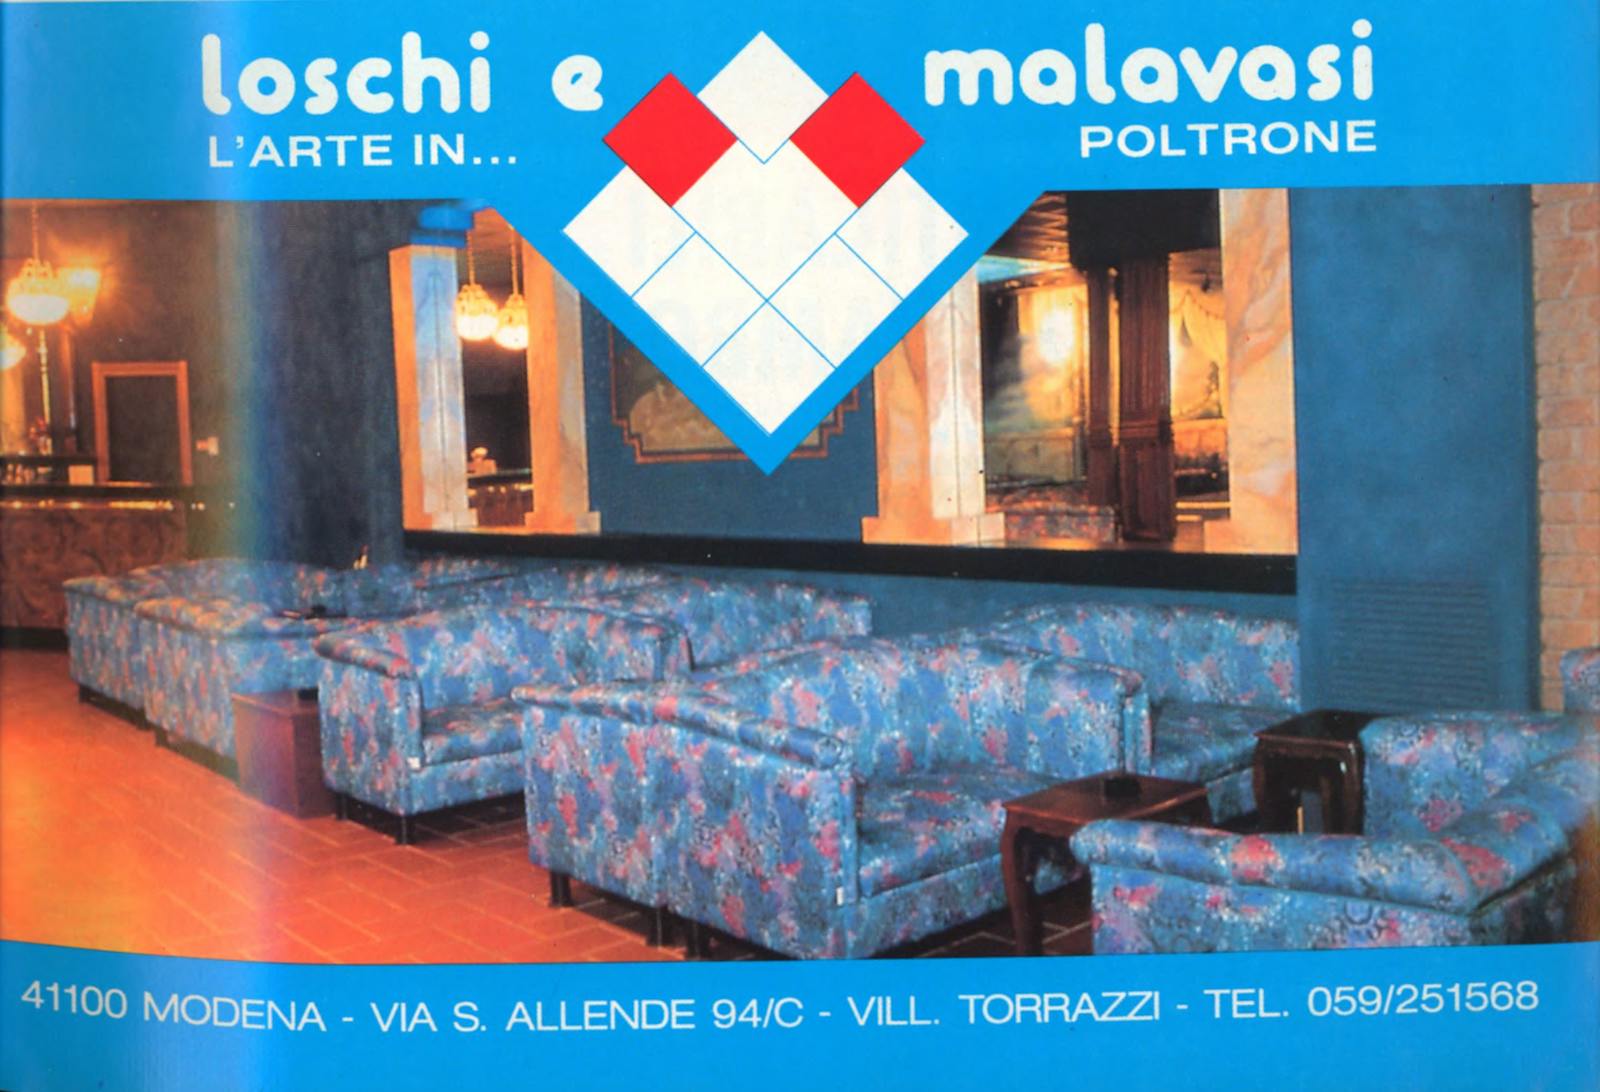 Pubblicità Loschi & Malavasi: L'arte in... poltrone